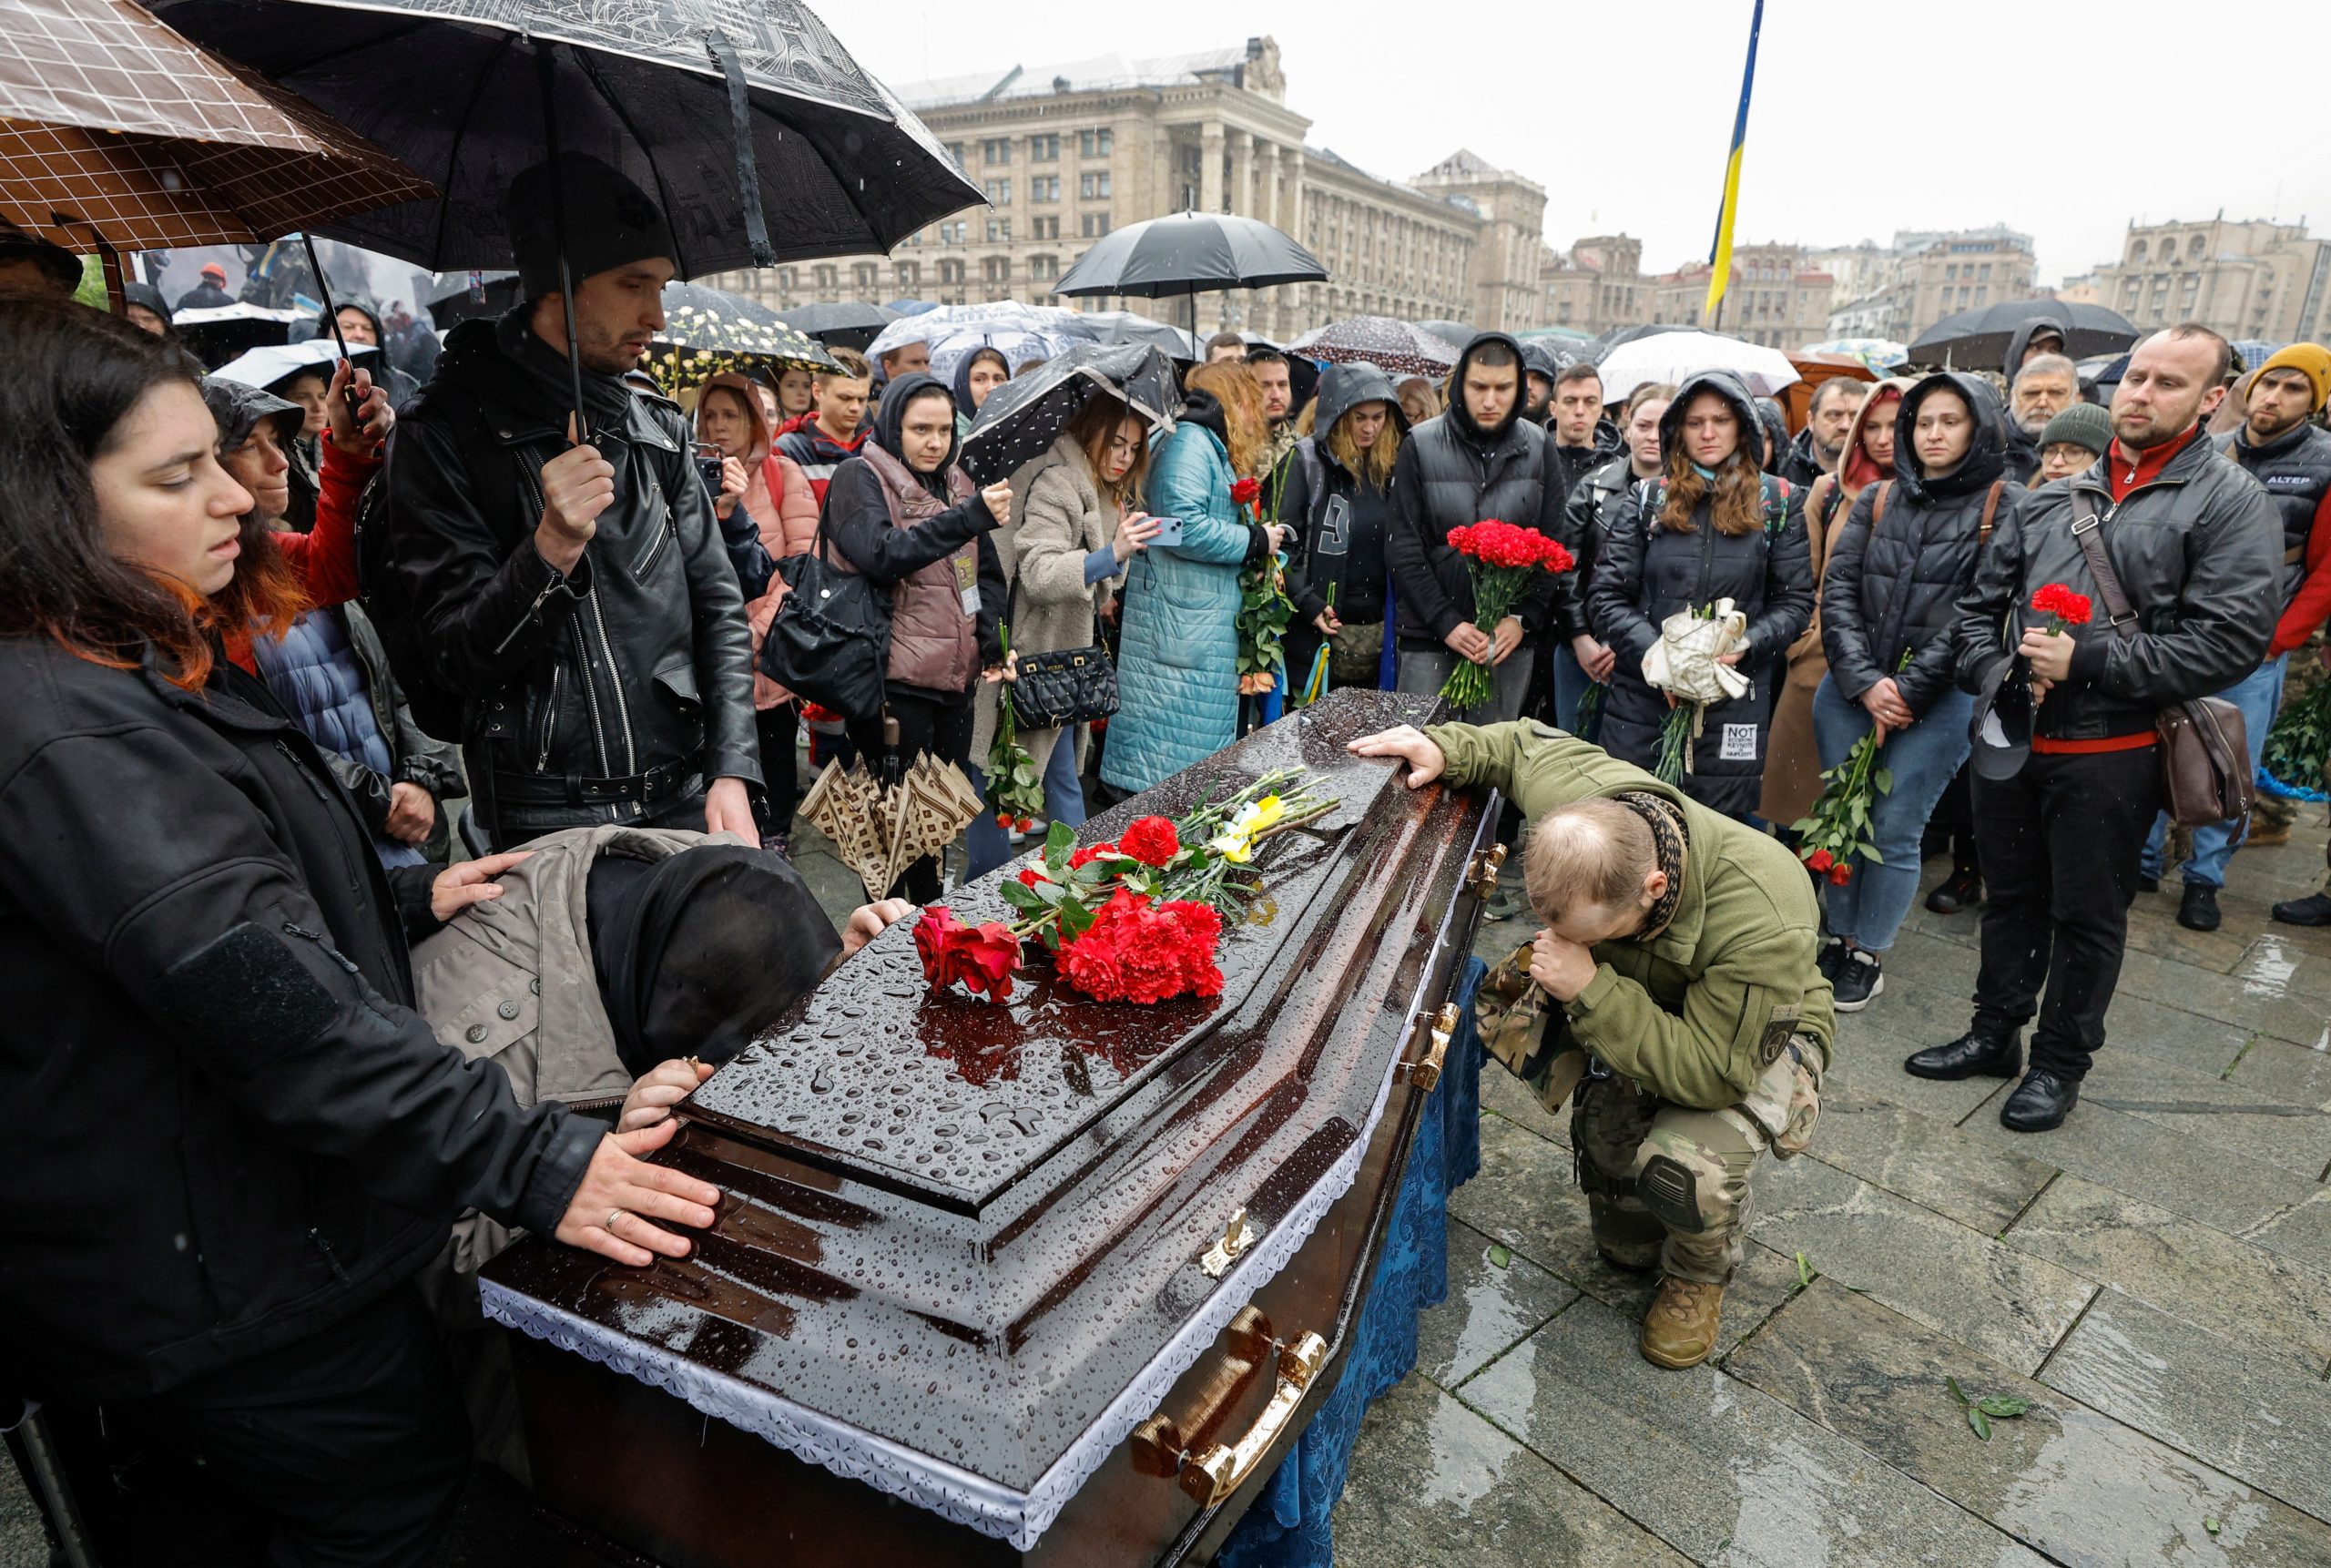 Las altas tasas de bajas han llevado a temores de falta de personal para Ucrania. Kyiv quiere reducir la edad de movilización